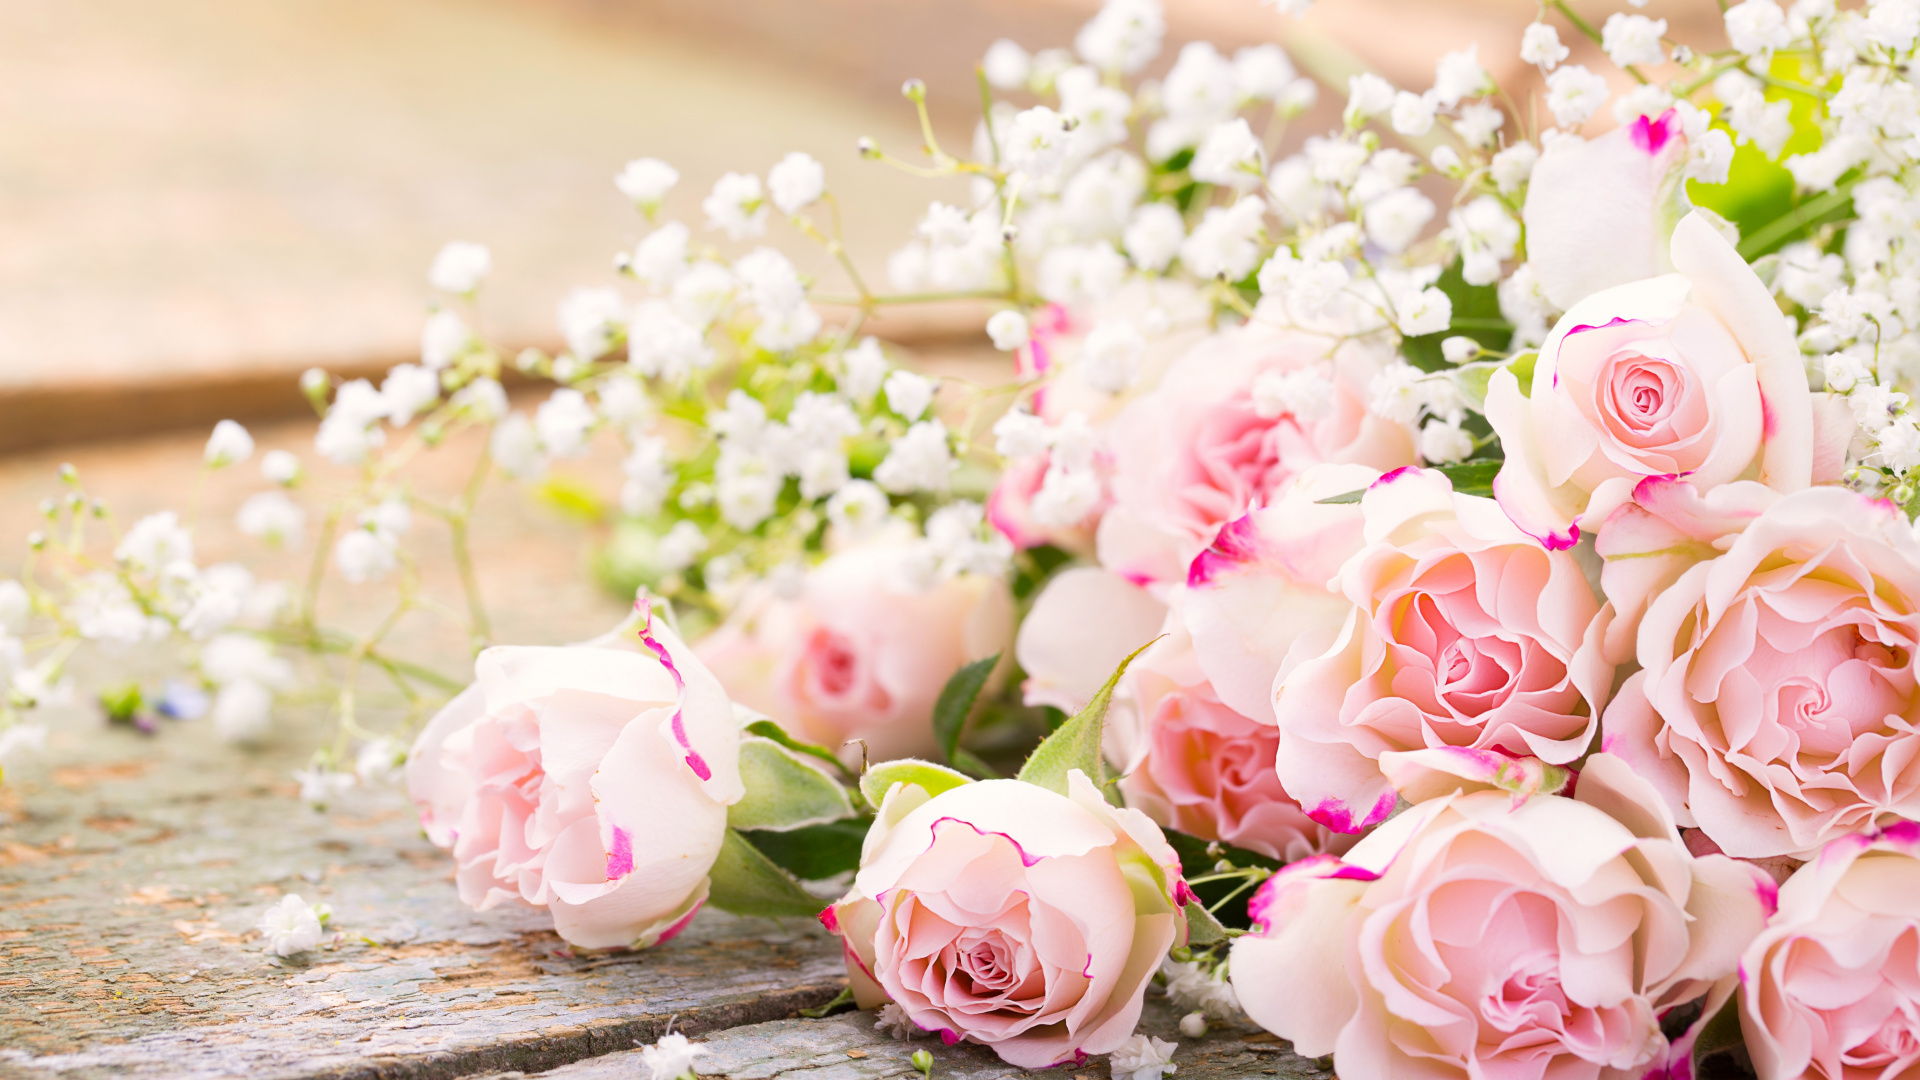 玫瑰花园, 粉红色, 花安排, 花卉设计, 切花 壁纸 1920x1080 允许